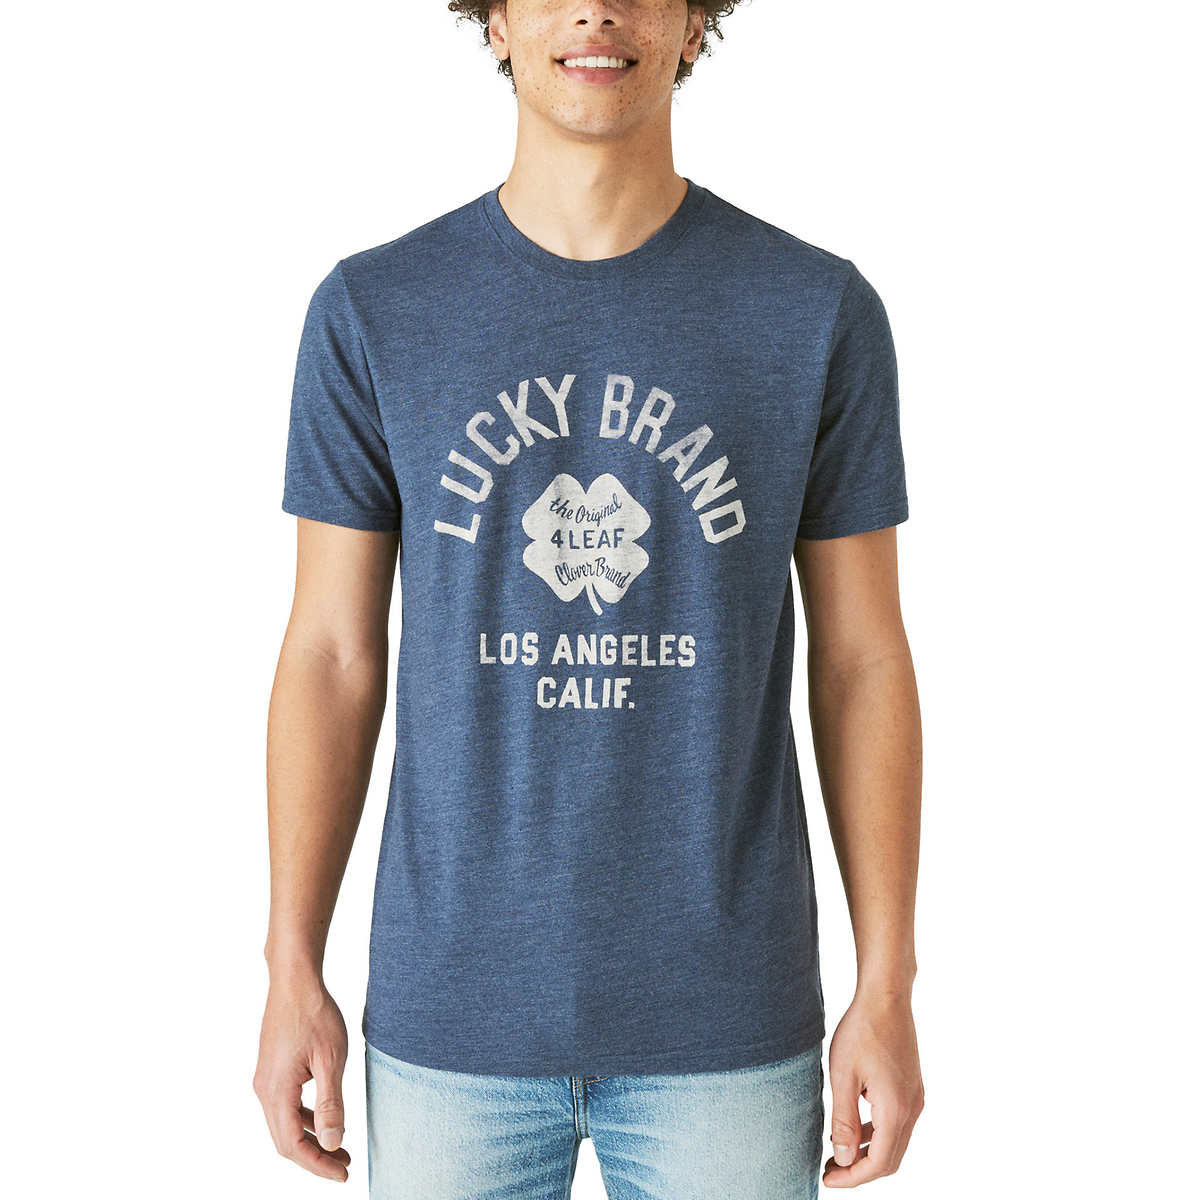 LUCKY BRAND - Men's Short Sleeve T-Shirt